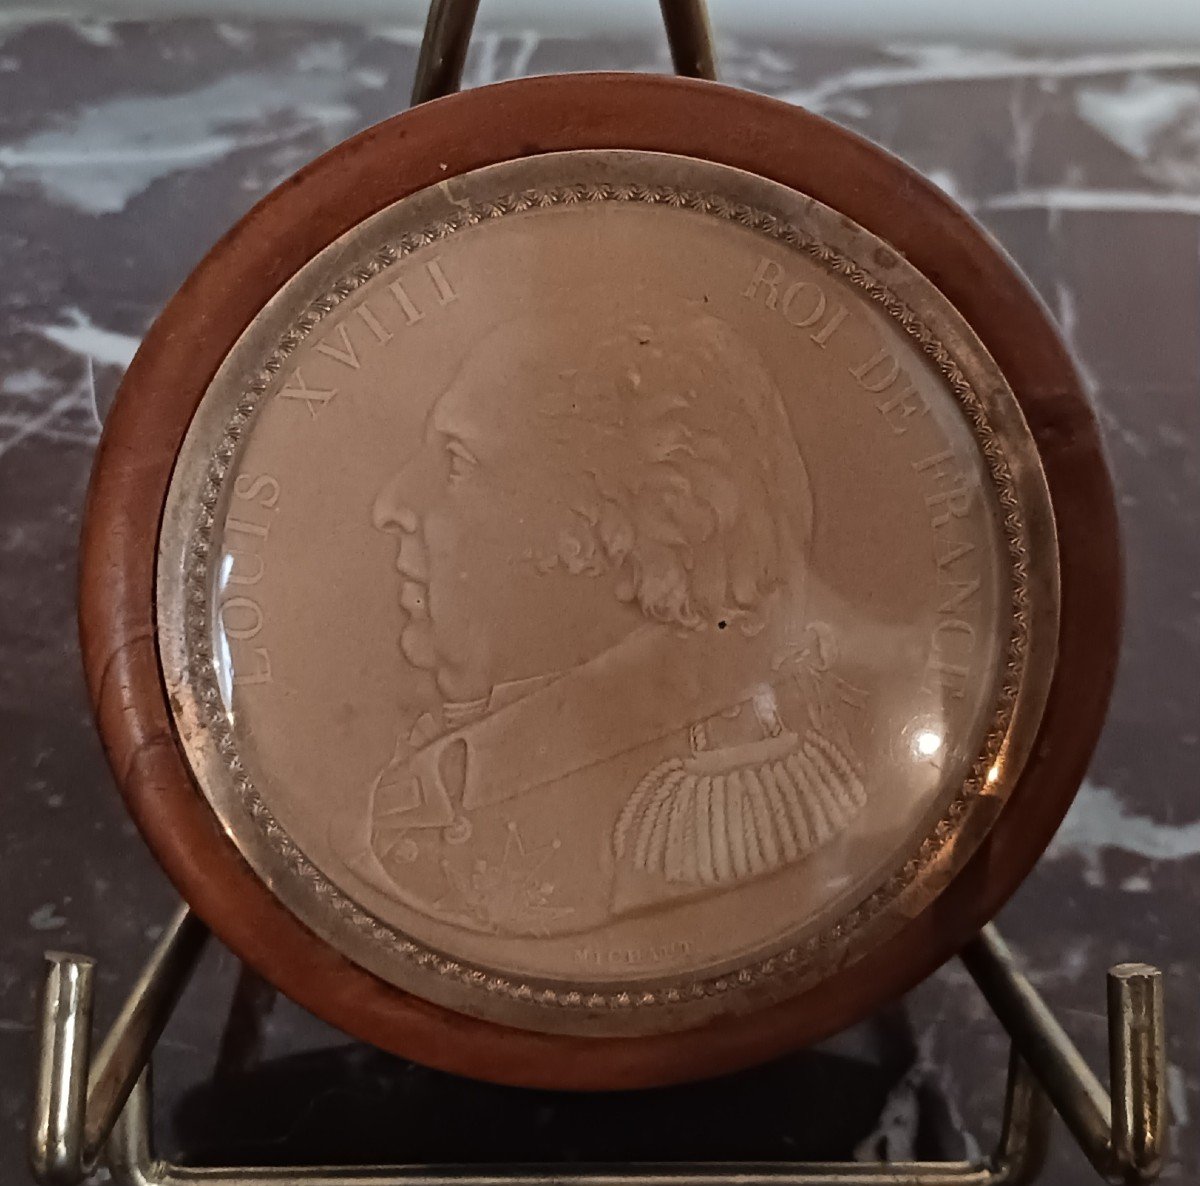 France début XIXe siècle - boîte royaliste - buis et portrait de Louis XVIII embossé - 